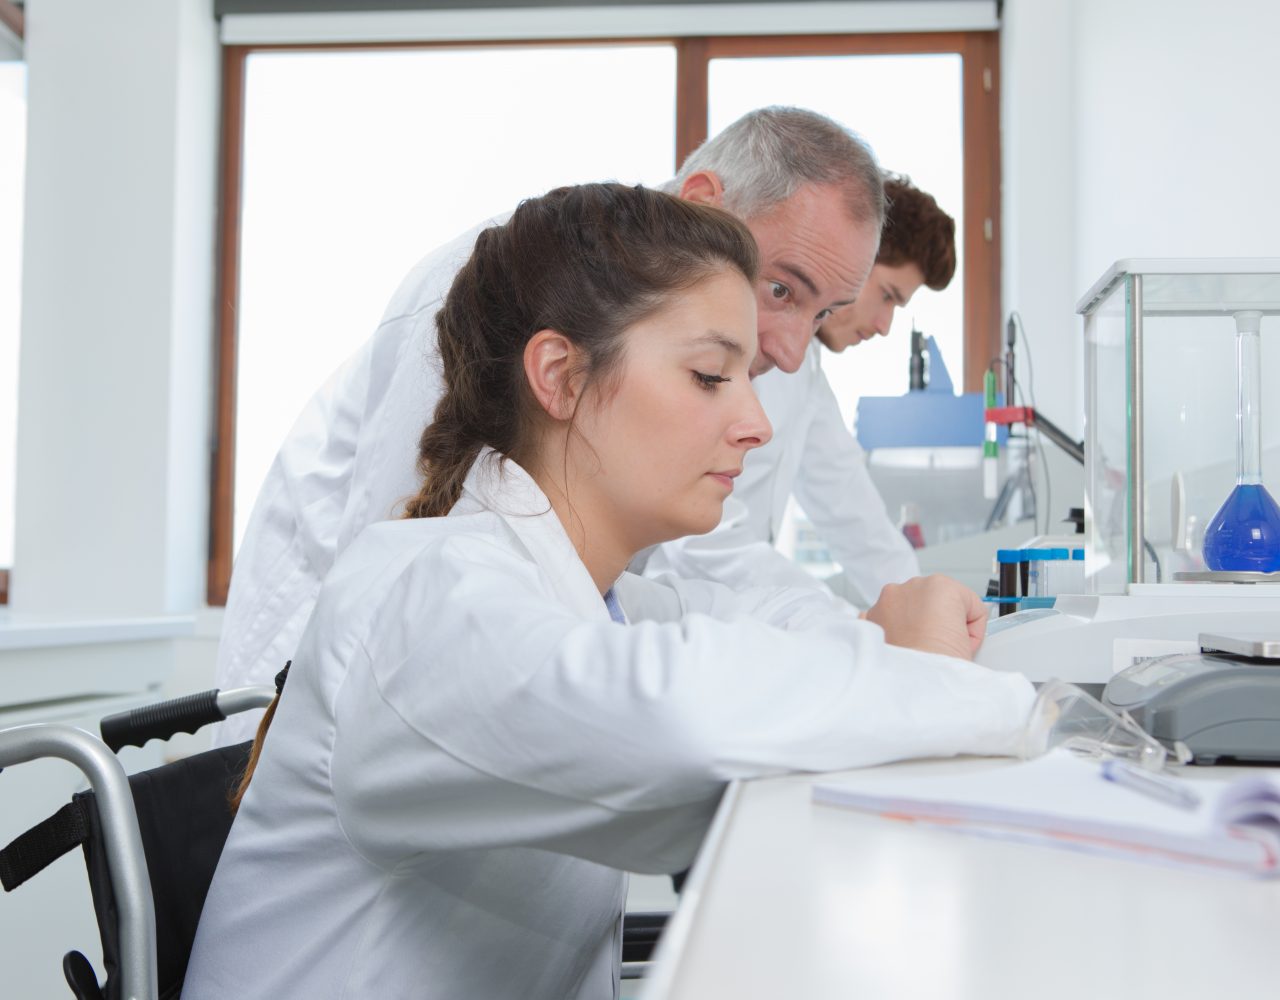 En kvindelig videnskabsmand i kørestol arbejder i et laboratorium og fokuserer på sit eksperiment, som en mandlig kollega bag hende observerer opmærksomt. de bærer begge laboratoriefrakker, omgivet af laboratorieudstyr.